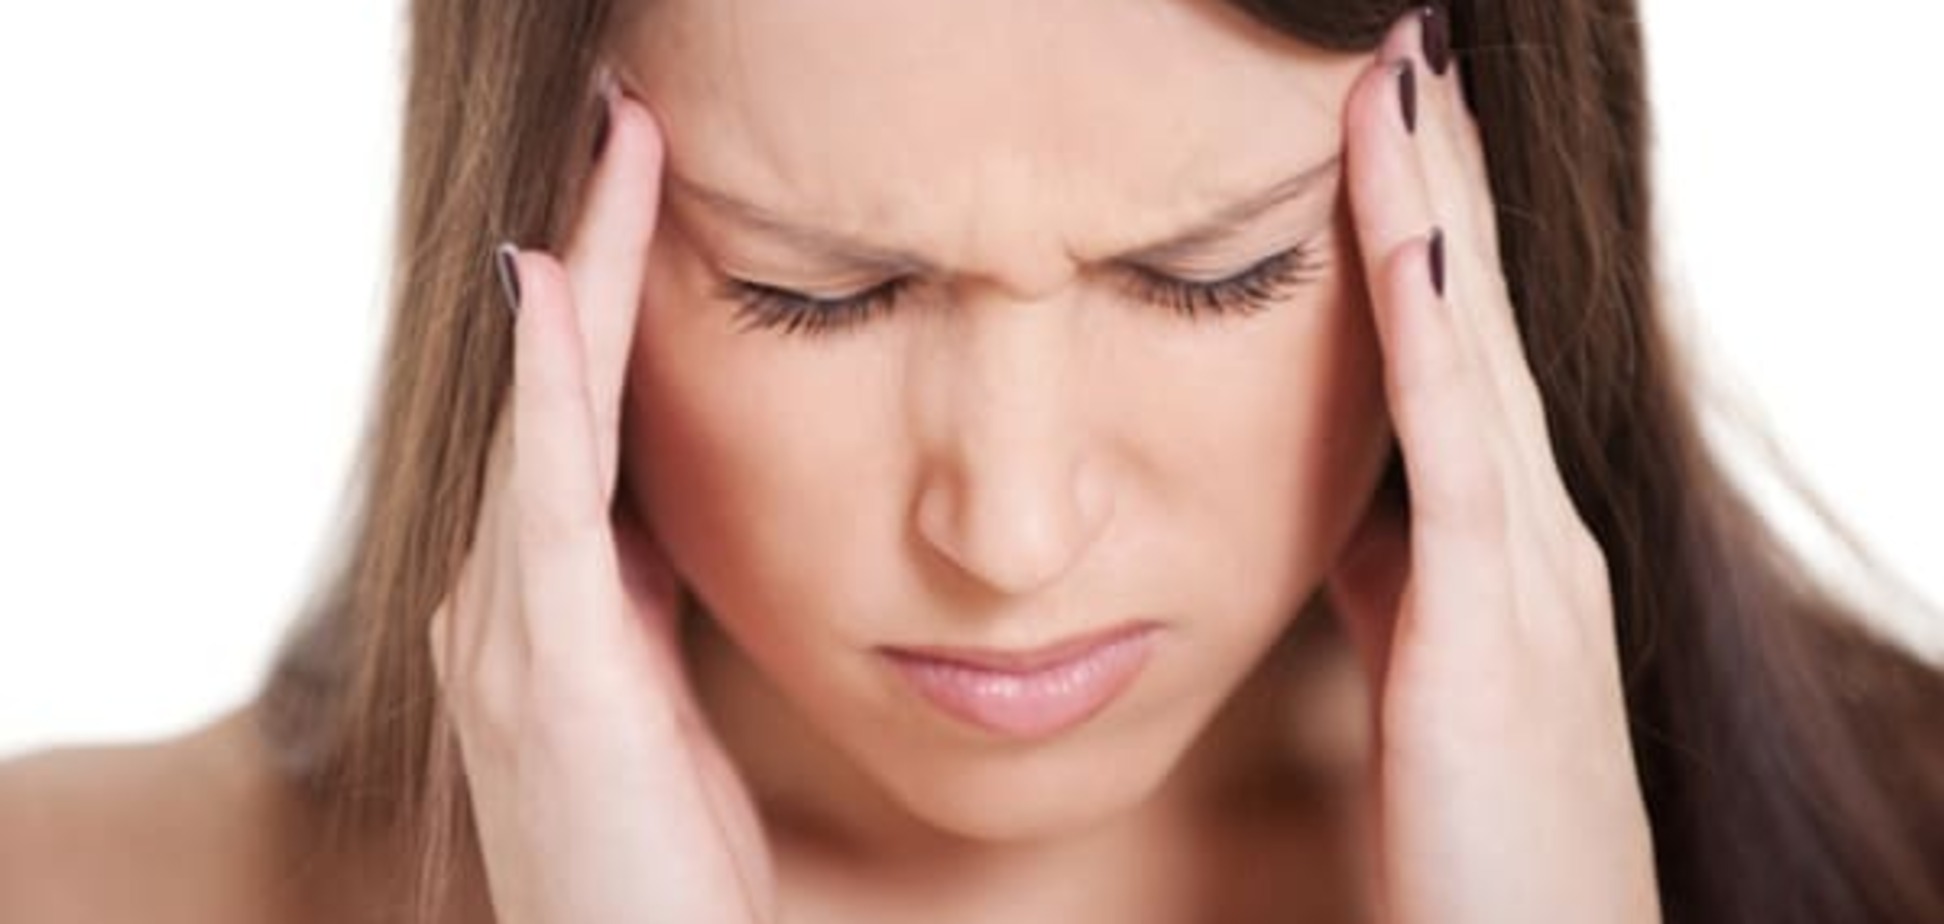 Мигрень: рекомендации по предотвращению головных болей